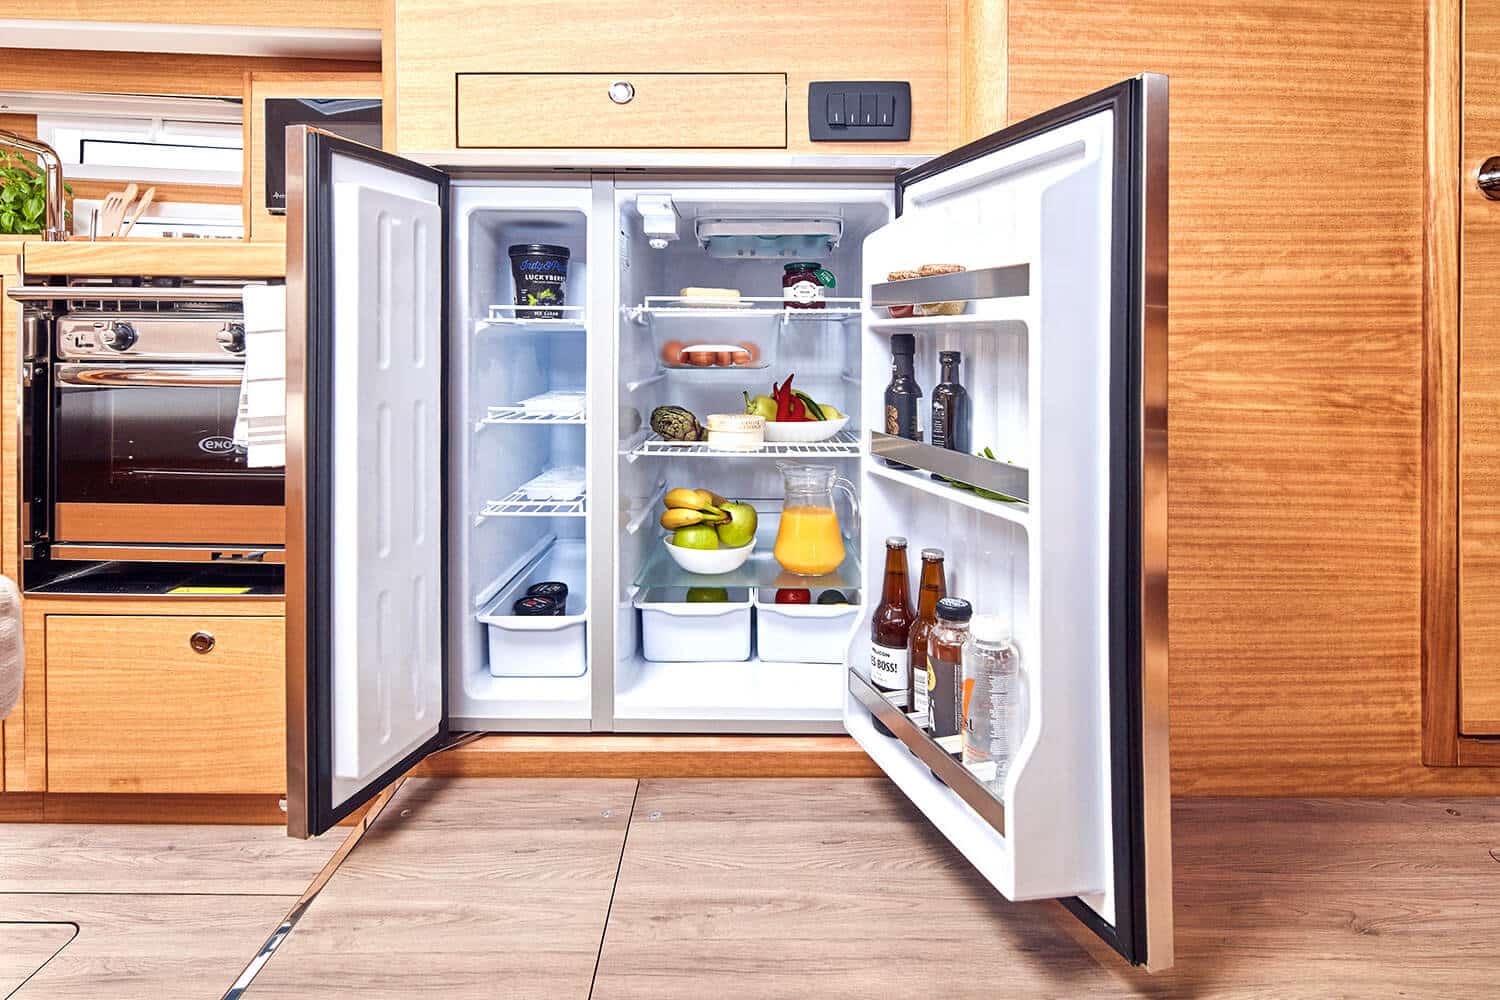 Offener Kühlschrank gefüllt mit verschiedenen Lebensmitteln wie Obst, Gemüse und Getränken, integriert in eine Holzküche mit modernem Herd, sichtbar auf einer Segelyacht.